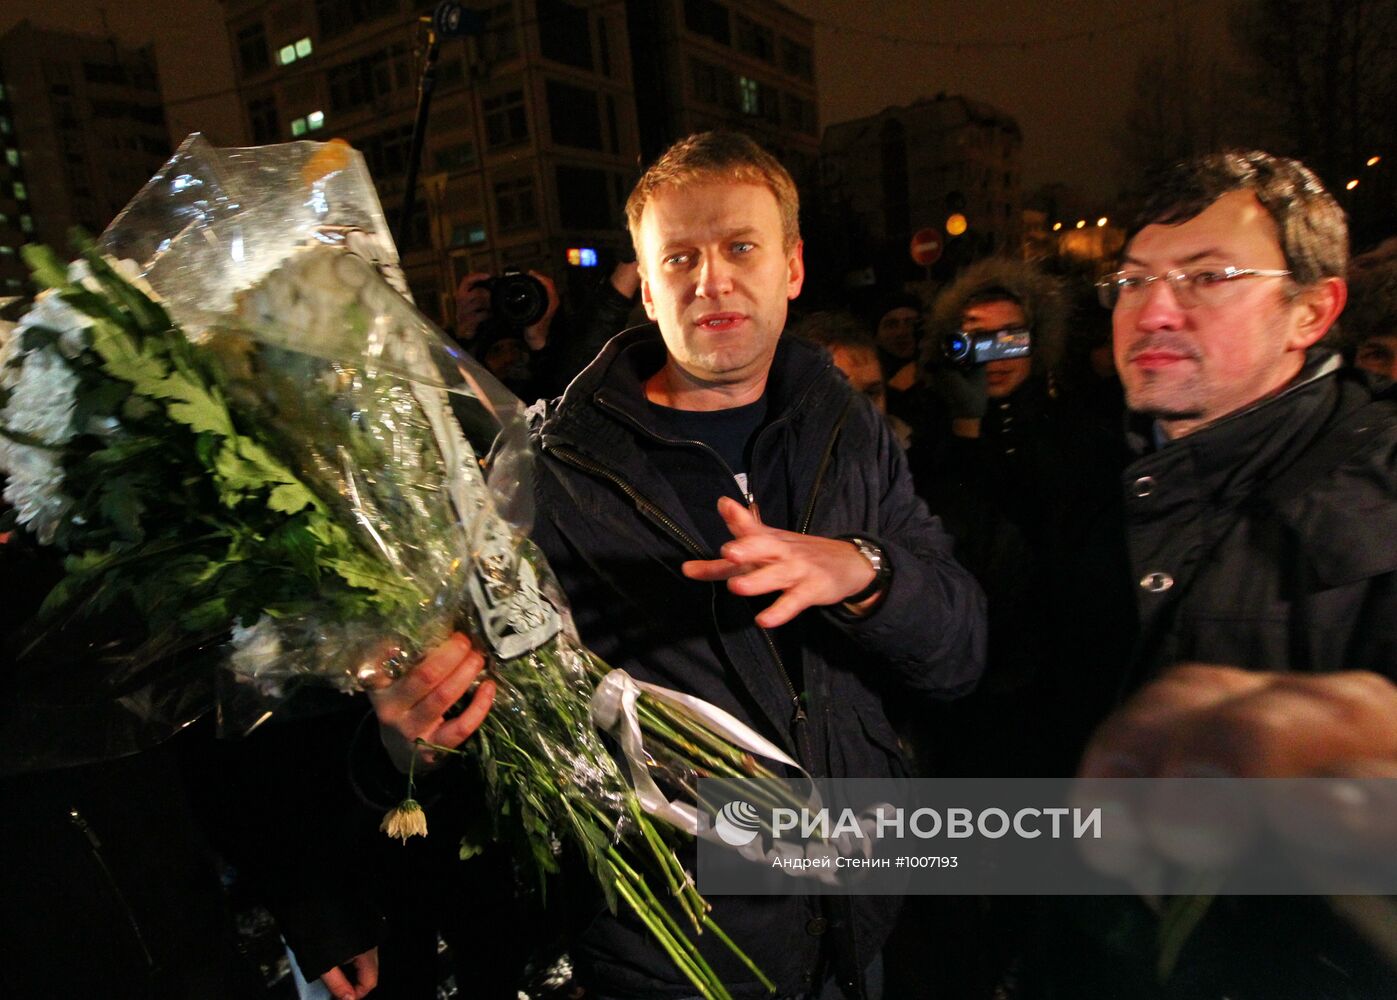 Блогер Алексей Навальный освобожден из-под ареста